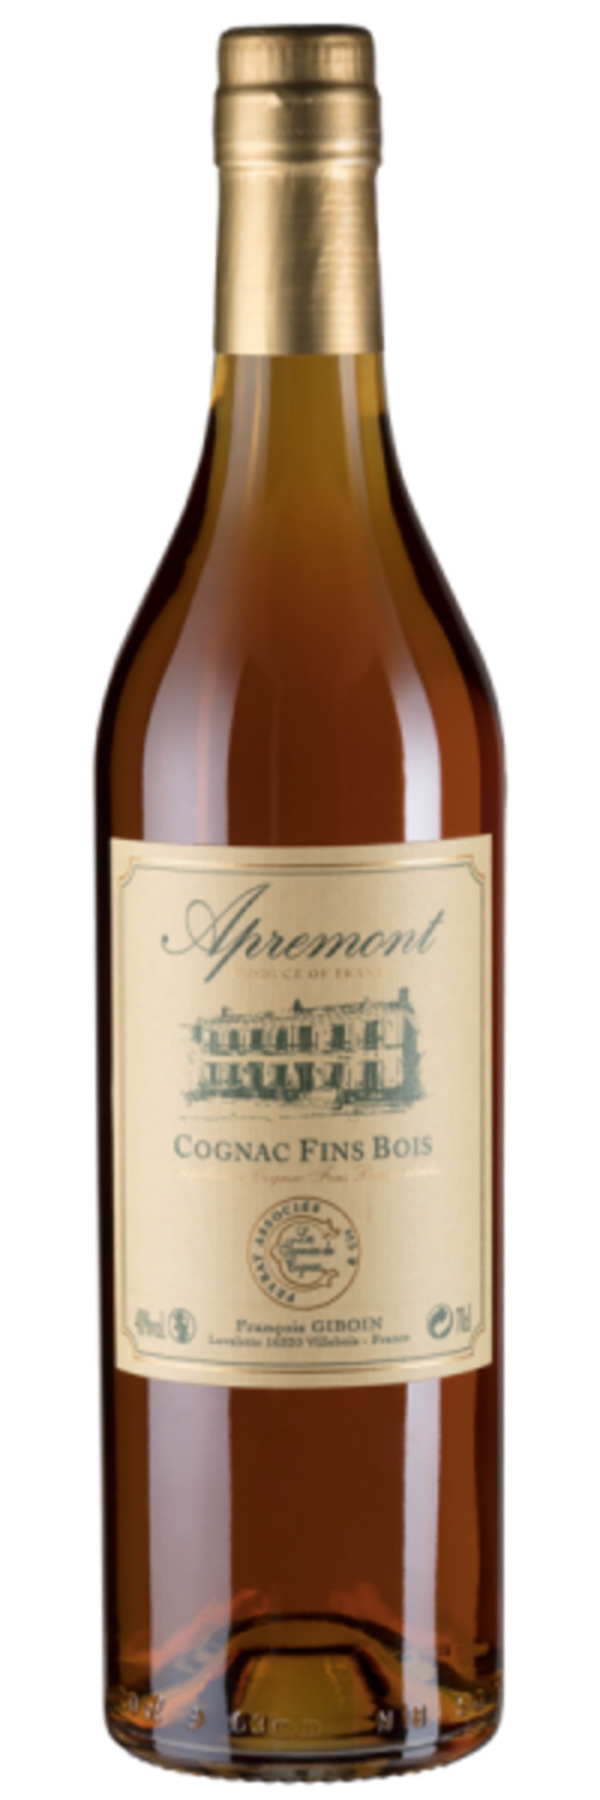 Bild 1 von Apremont Cognac Fins Bois - Maison Peyrat - Spirituosen